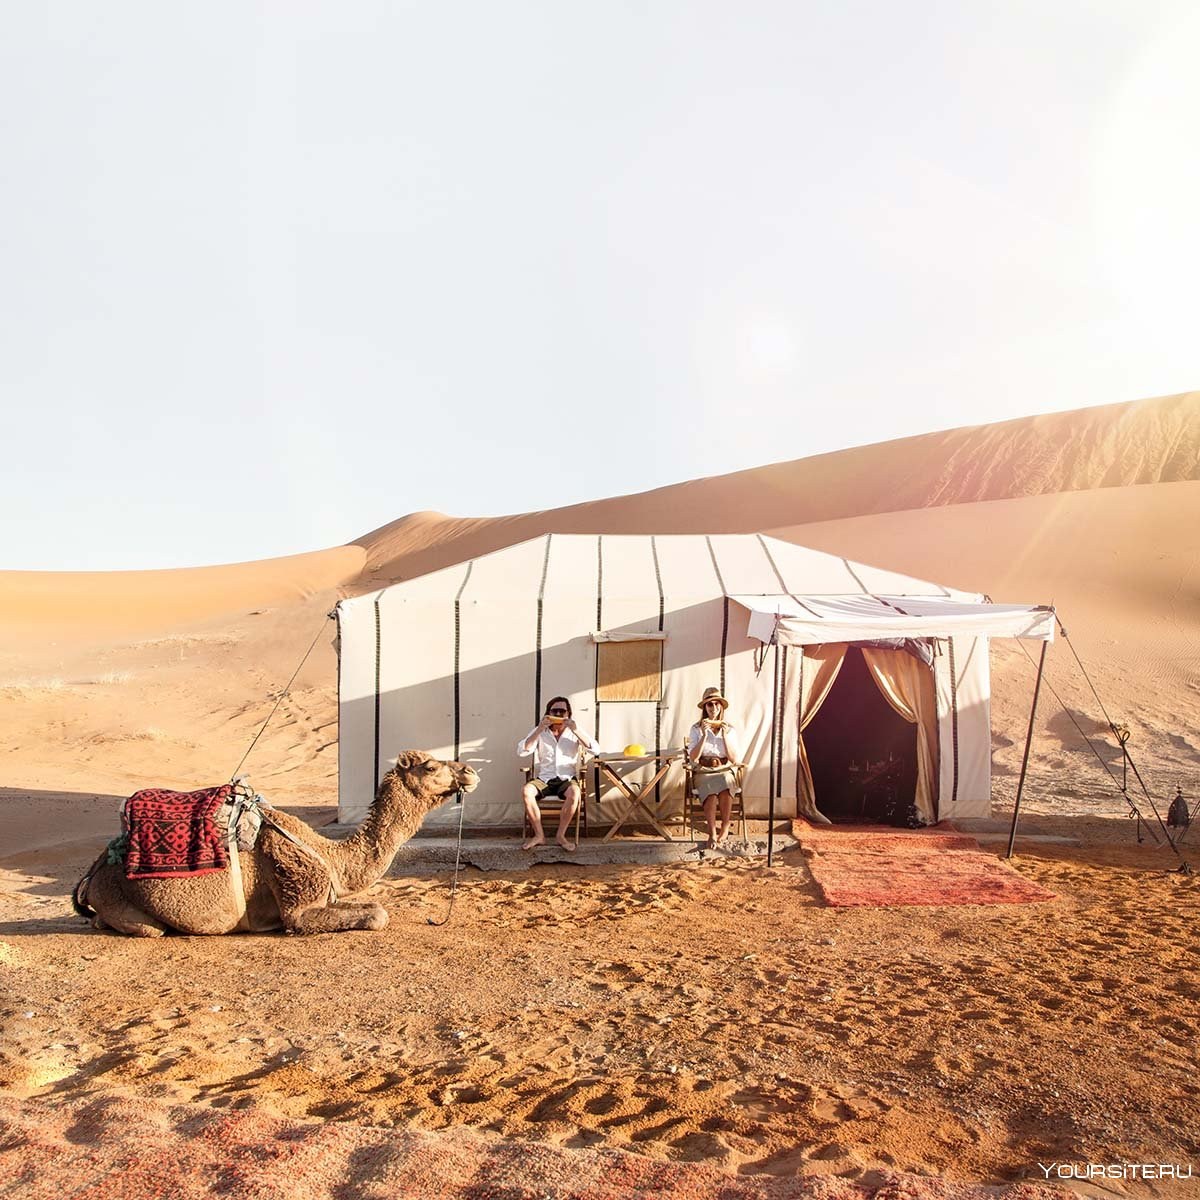 Жизнь и быт в пустыне. Шатер бедуинов фелидж. Марокко поселение Мерзуга. Марокко Desert Luxury Camp. Фелидж жилище бедуинов.